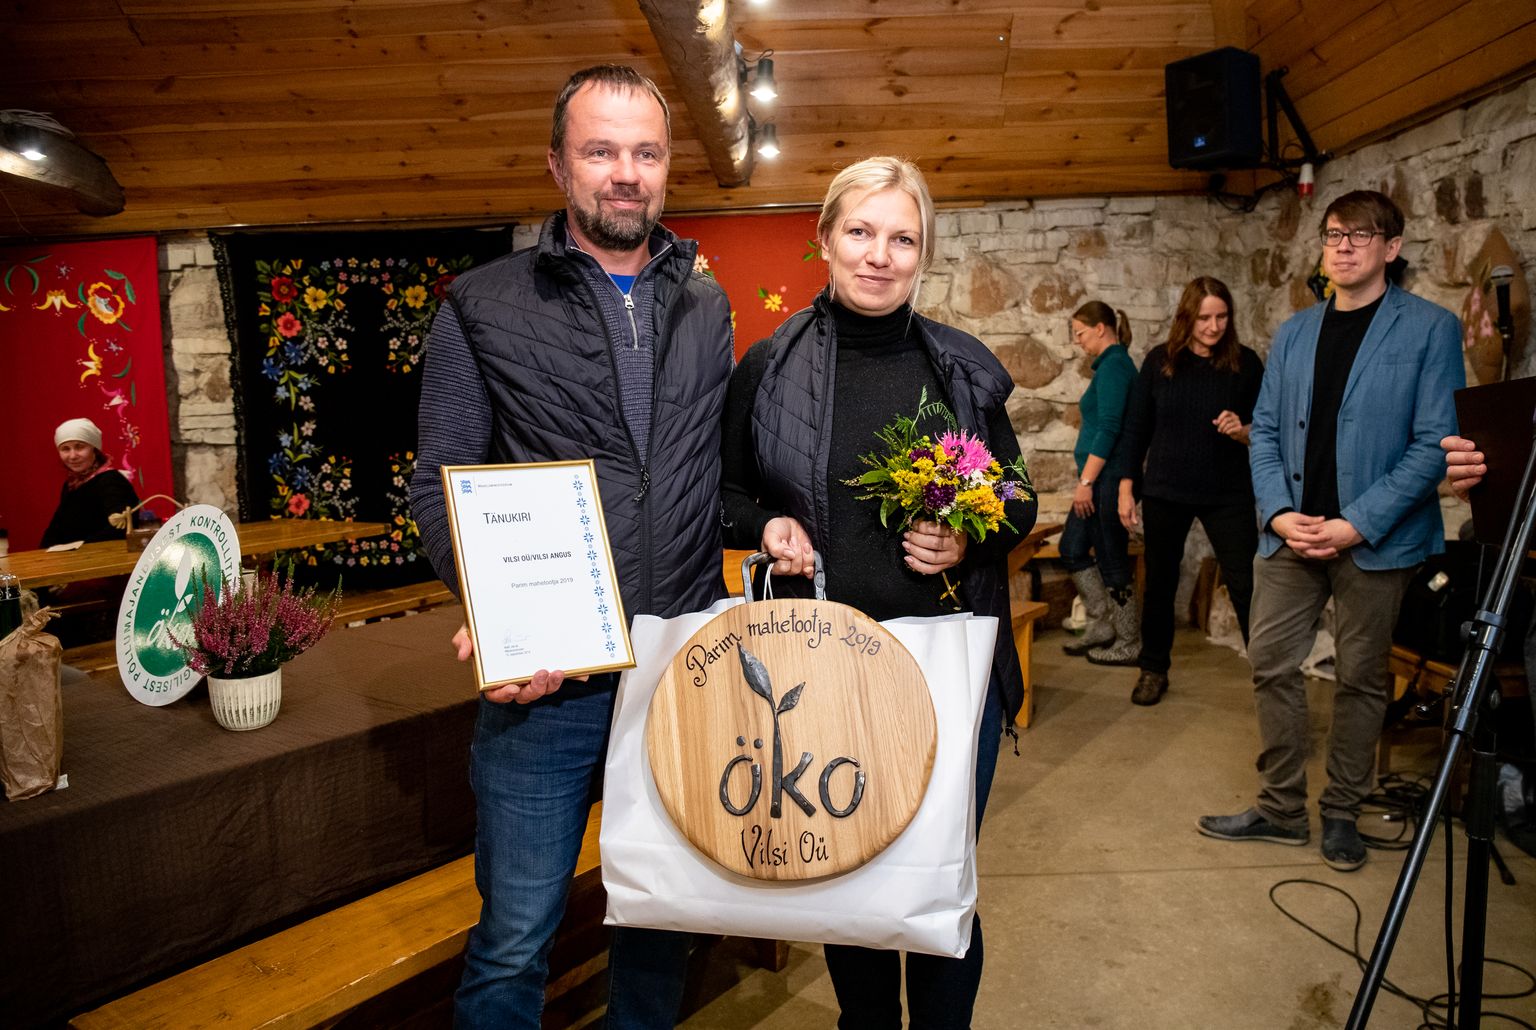 Käesoleva aasta parim mahetootja on Tiina ja Ivo Tomsoni ettevõte Vilsi OÜ.